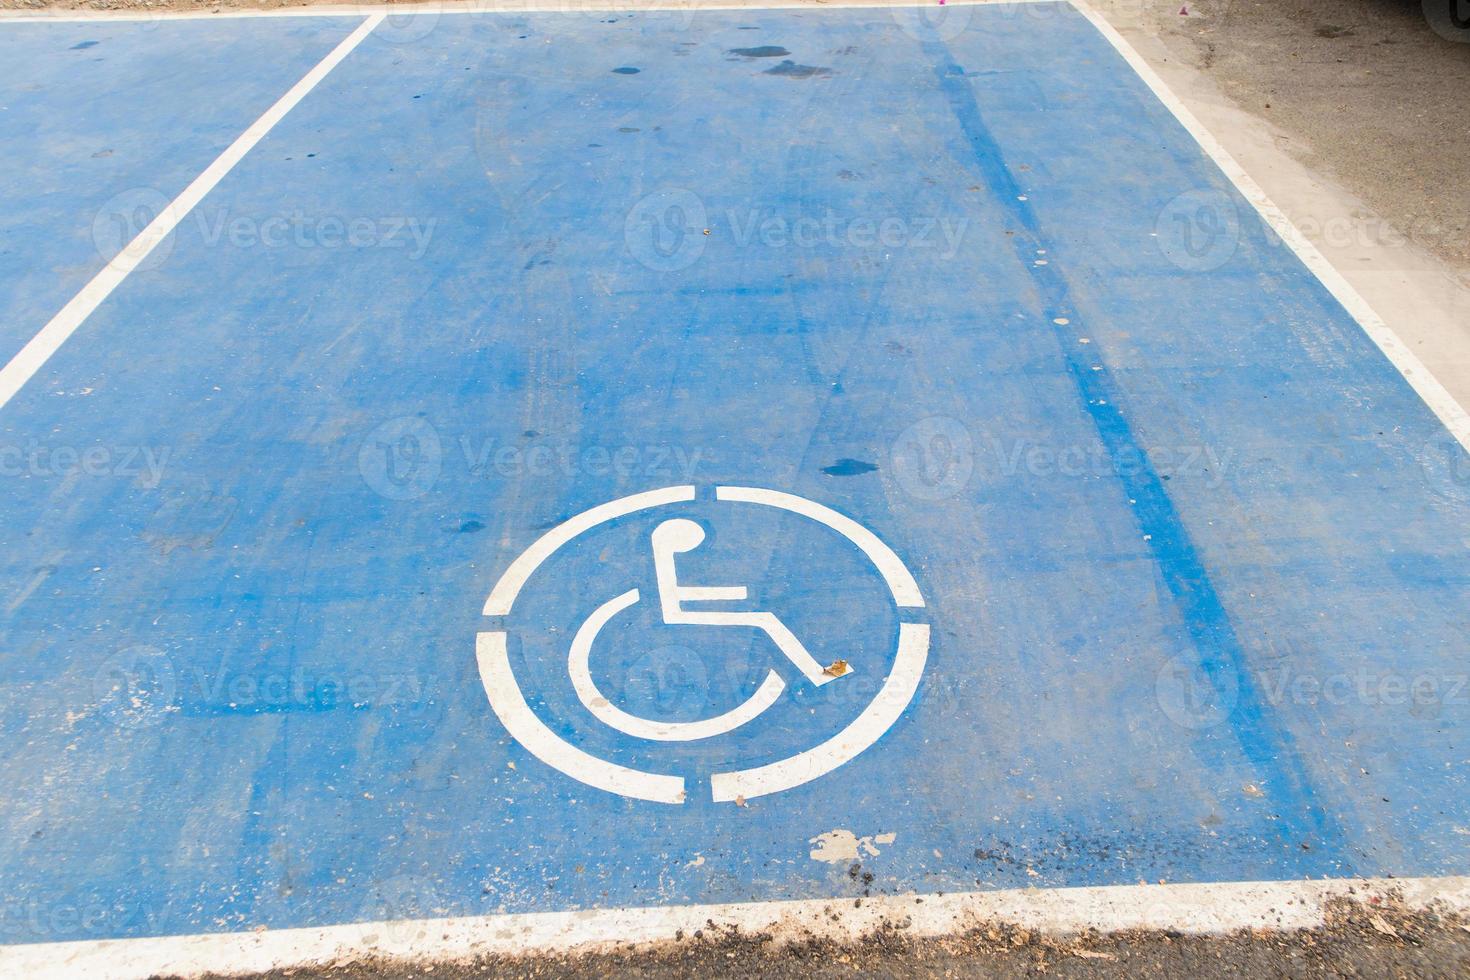 schakel teken op parkeerplaats in blauwe verfkleur uit foto